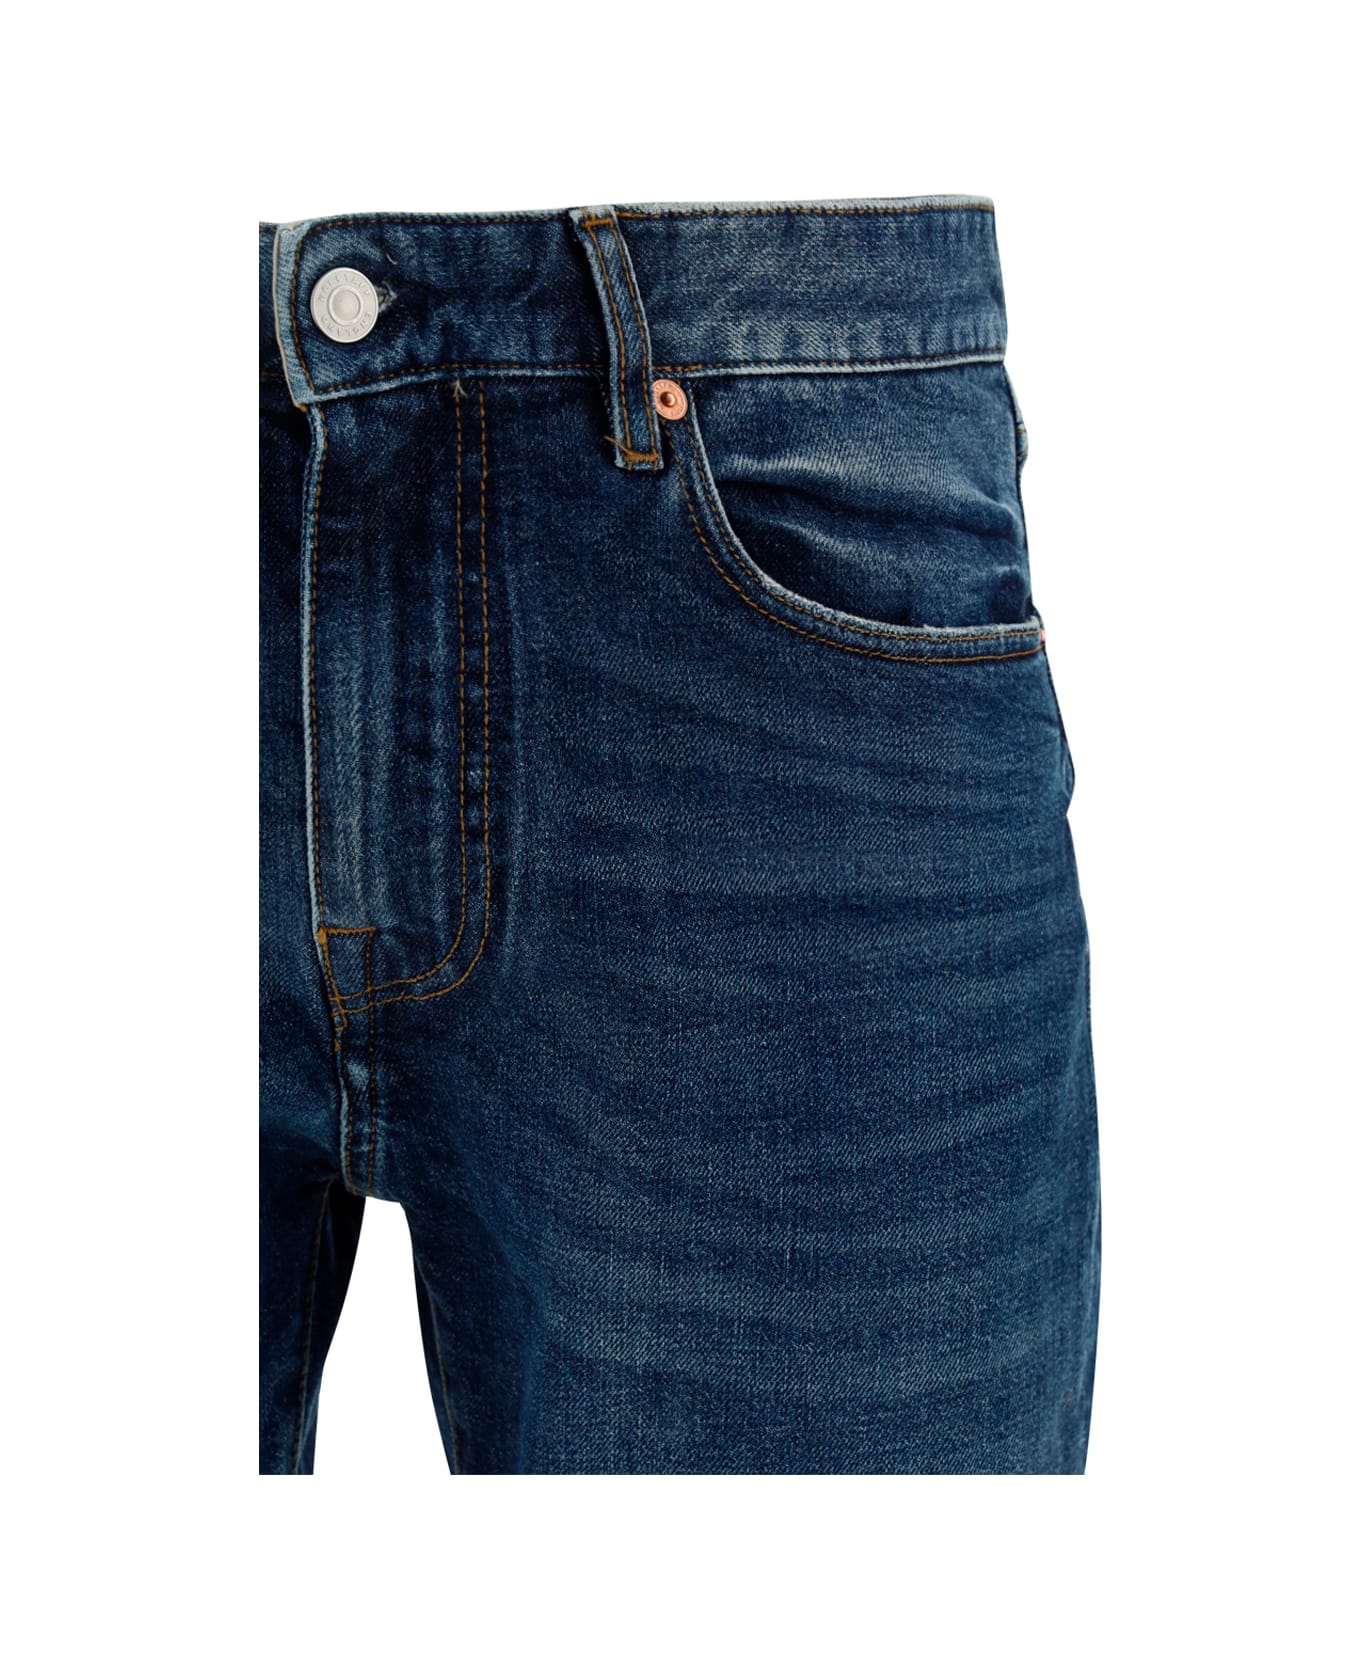 Belstaff Longton Jeans - Washed Indigo